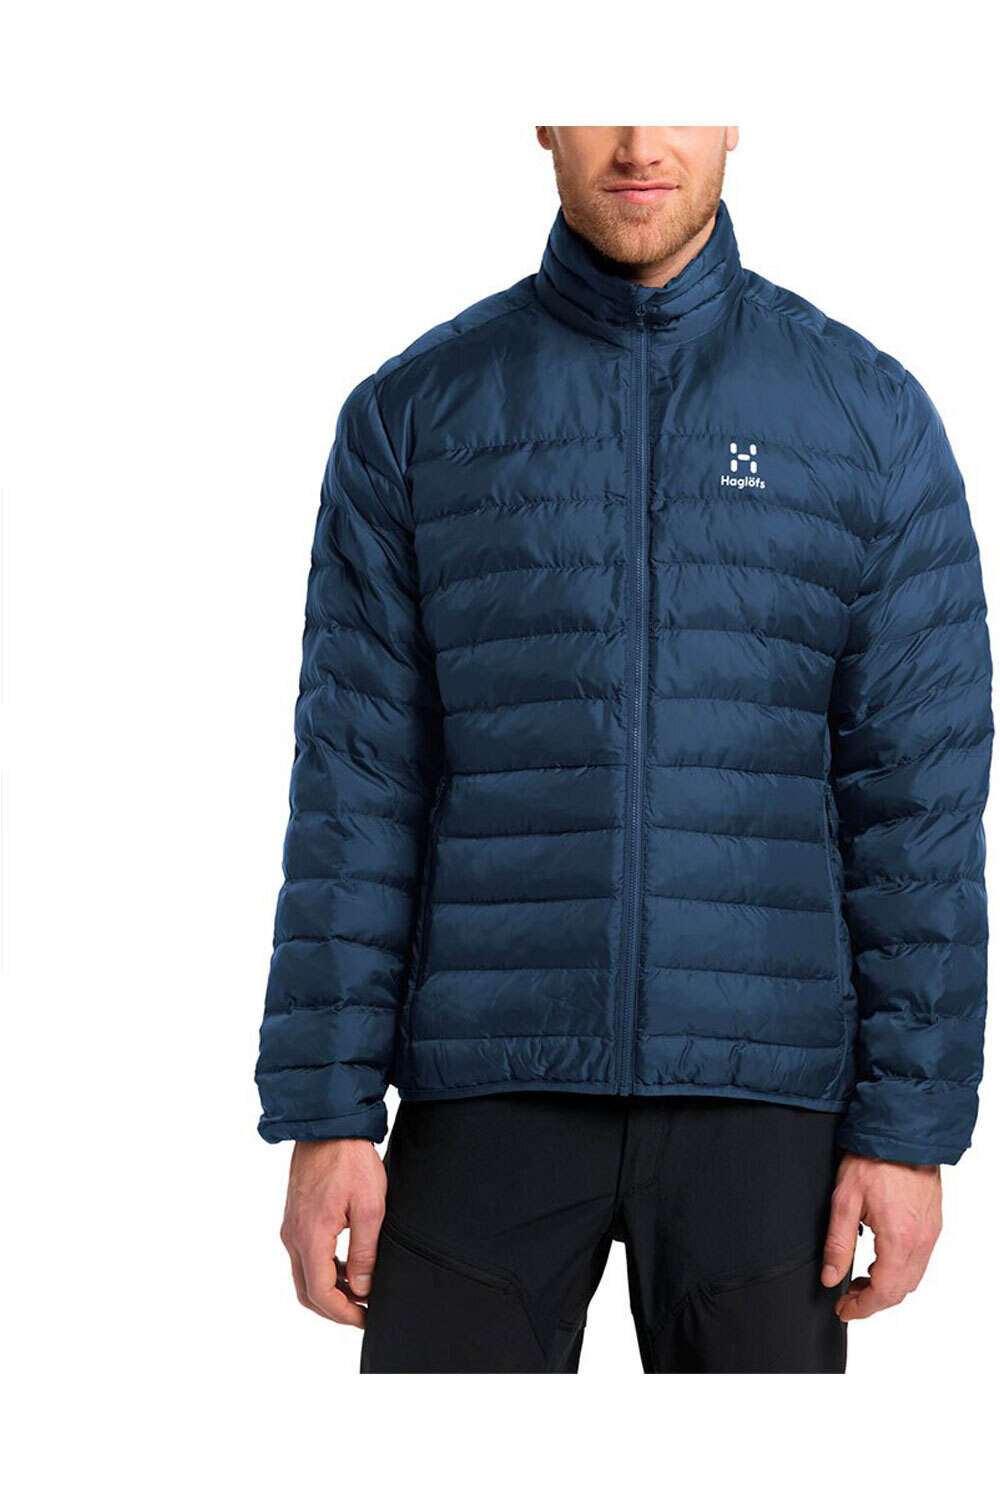 Haglofs chaqueta impermeable insulada hombre Eldstad 3-in-1 Mimic GTX Jacket Men 03